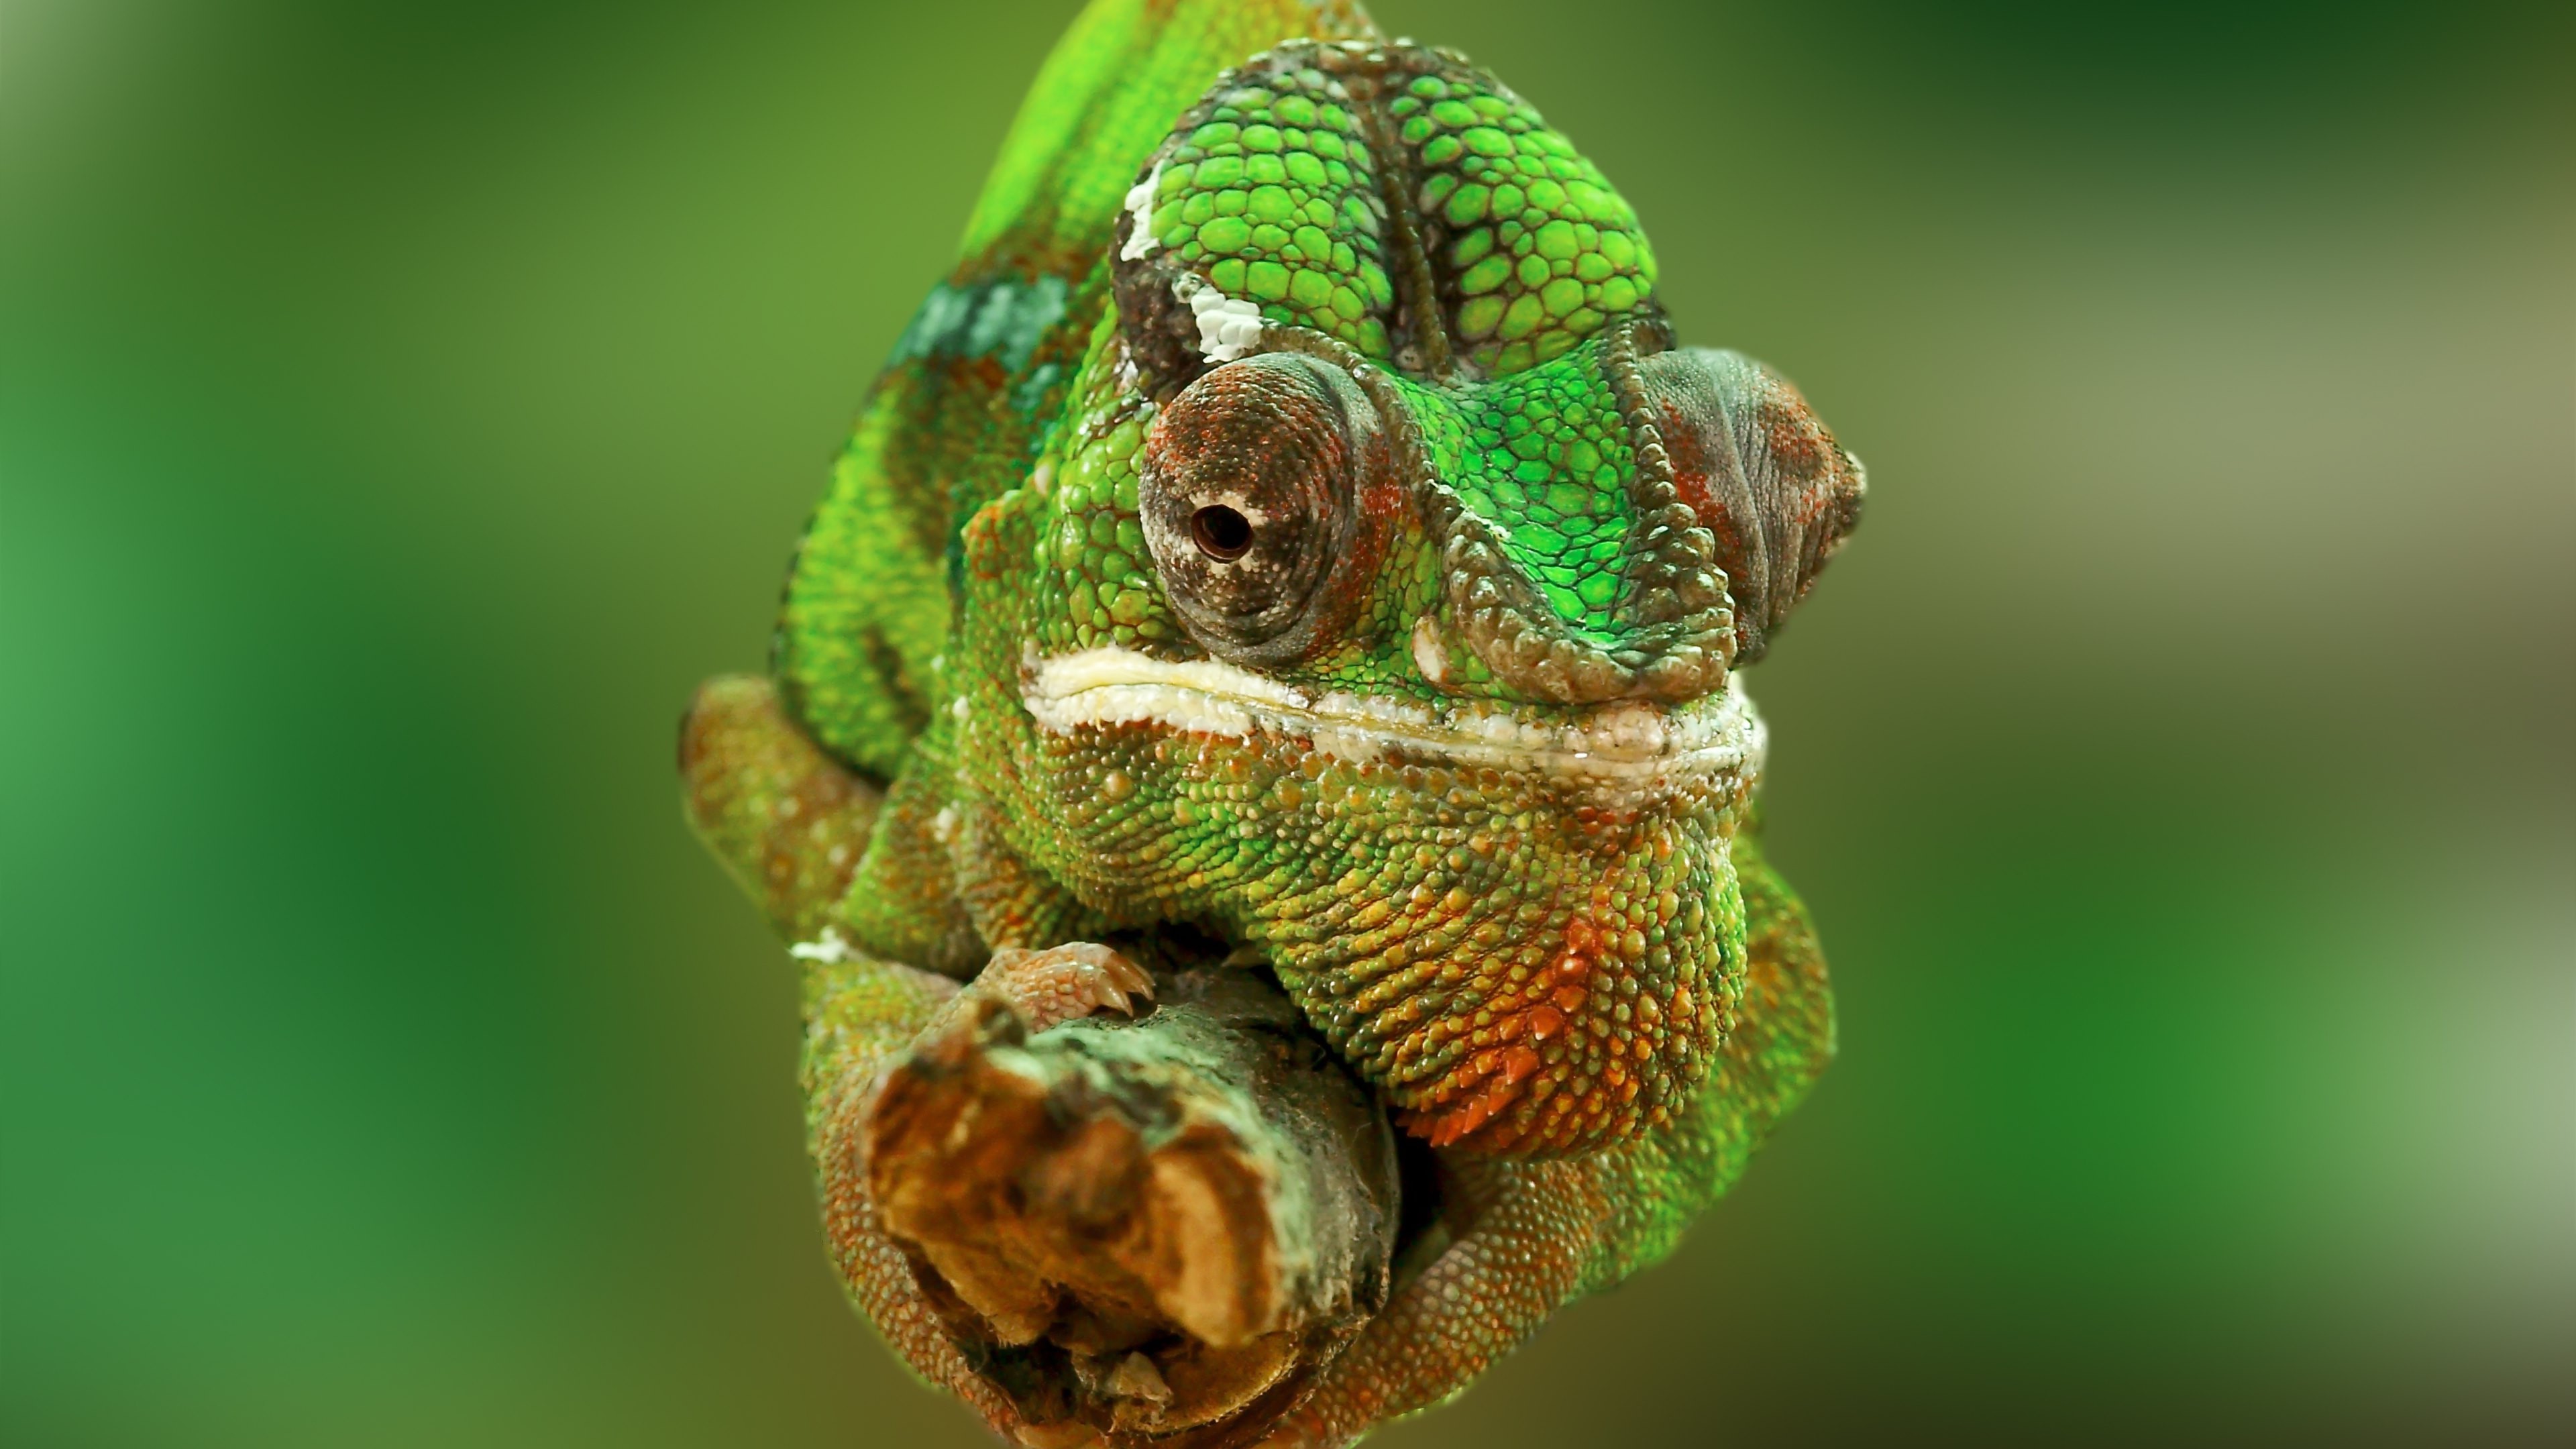 عکس خارق العاده و دیدنی از قورباغه سبز رنگ و زیبا 